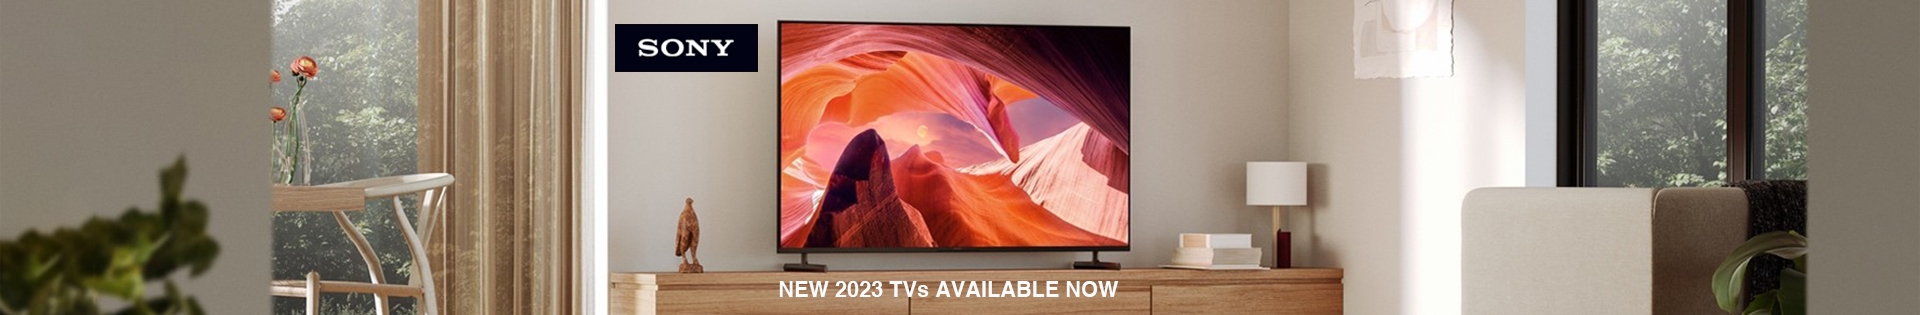 SONY 2023 TVs